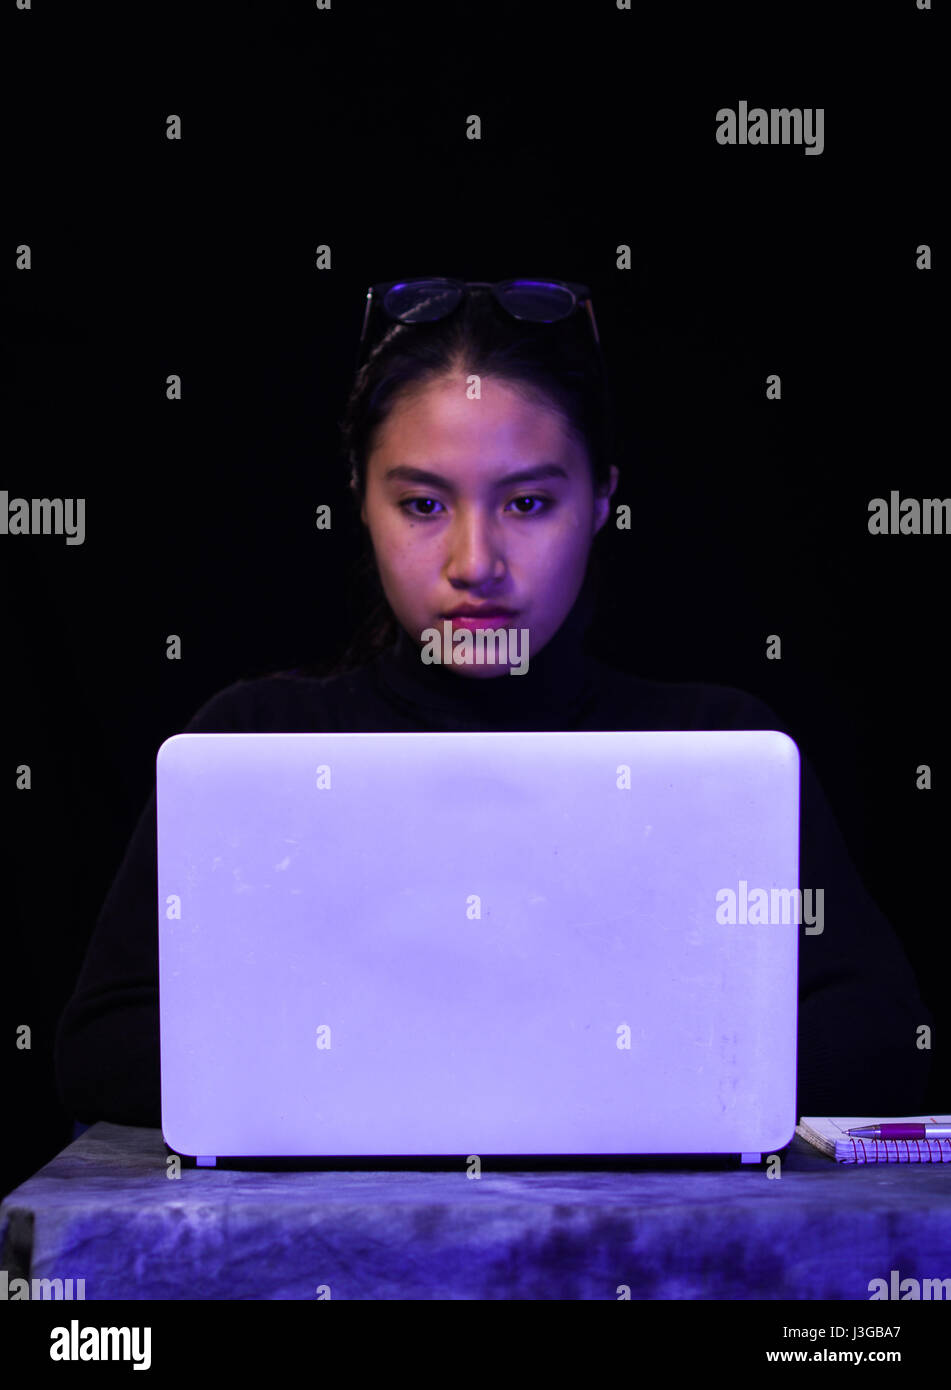 Ritratto di una bellissima e Smart girl hacker con il computer portatile su sfondo scuro con l'utilizzo di bicchieri nella sua testa Foto Stock